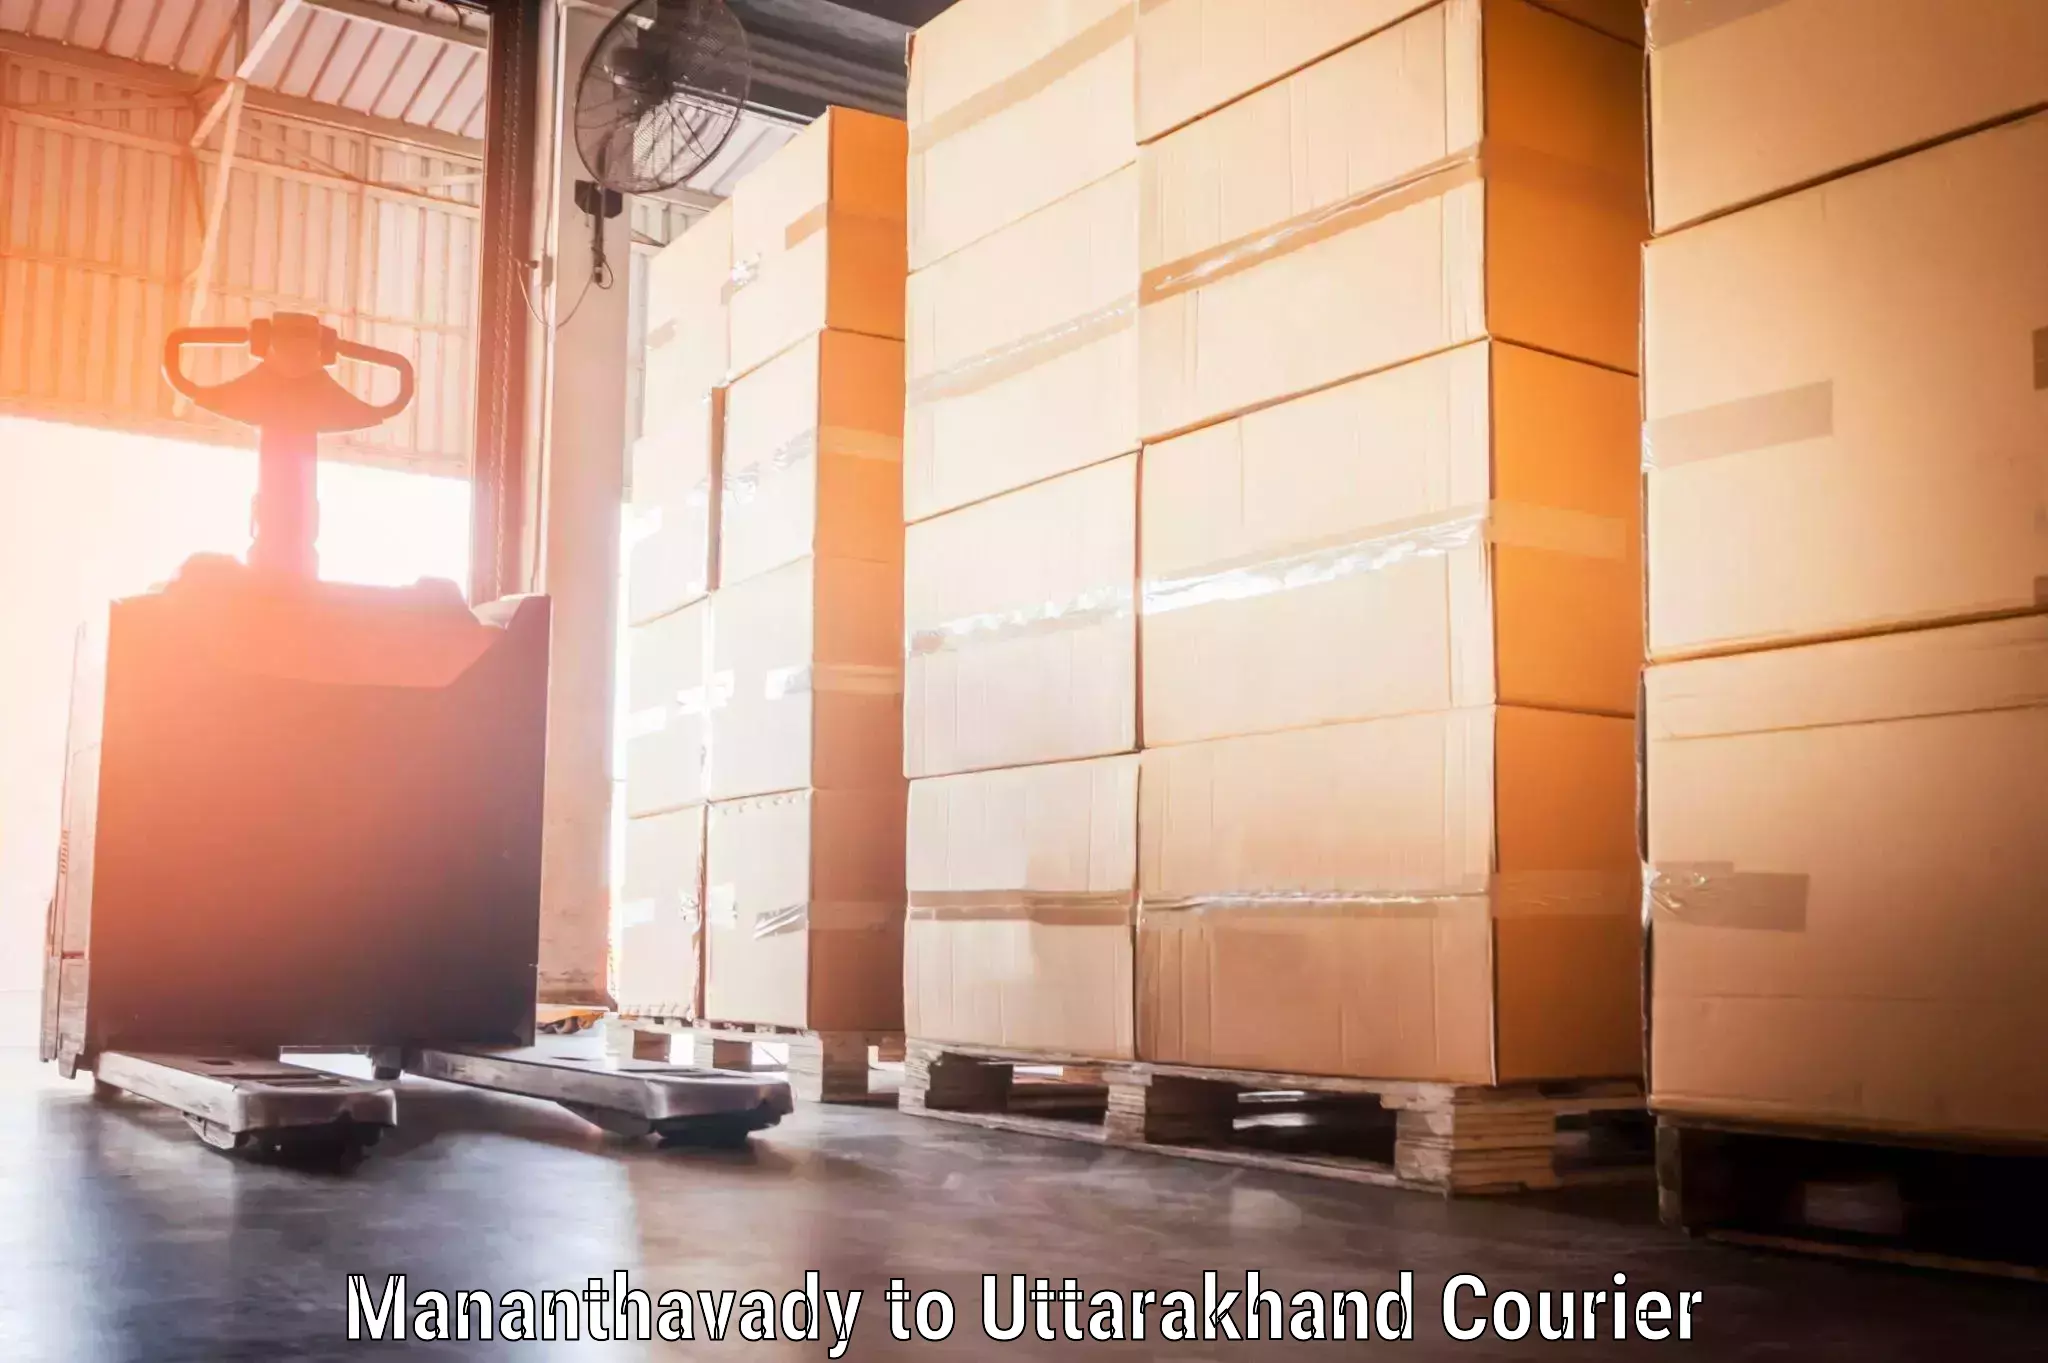 Luggage transport consulting Mananthavady to Uttarakhand